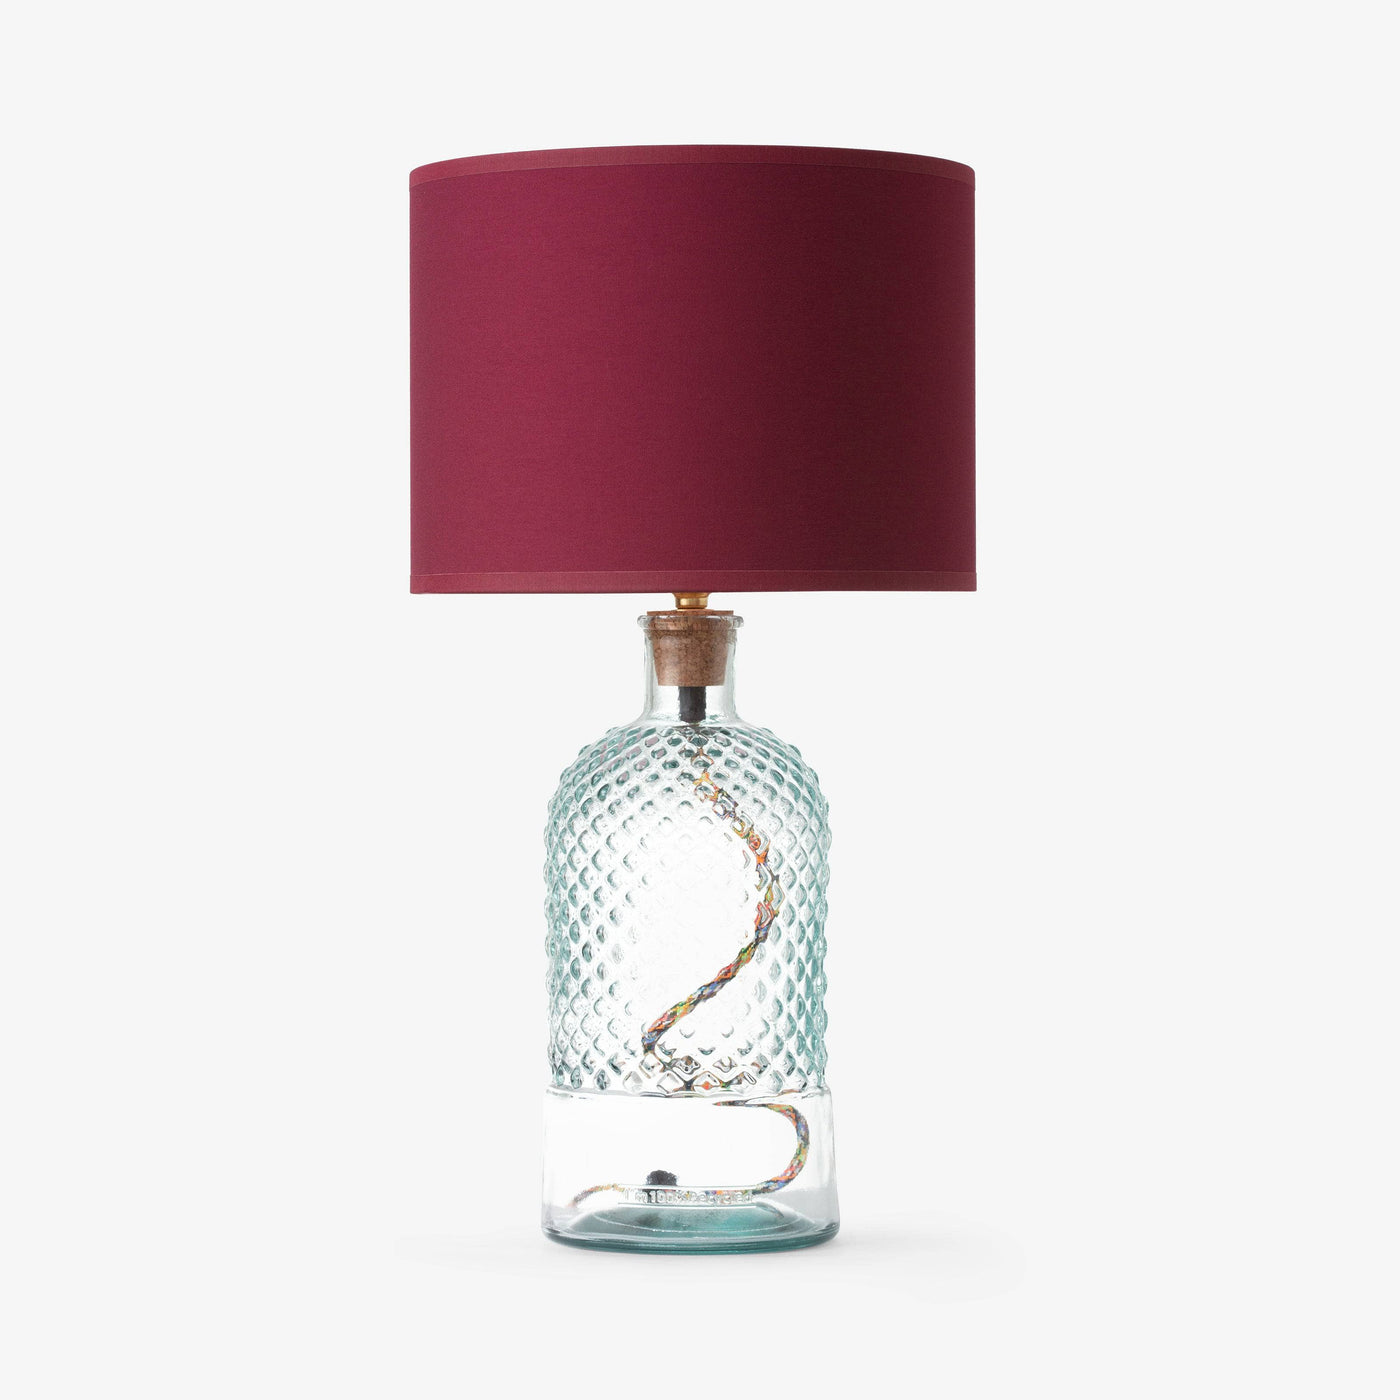 Alnair Diamond Cut Glass Table Lamp, Clear, 34 cm Table & Bedside Lamps sazy.com